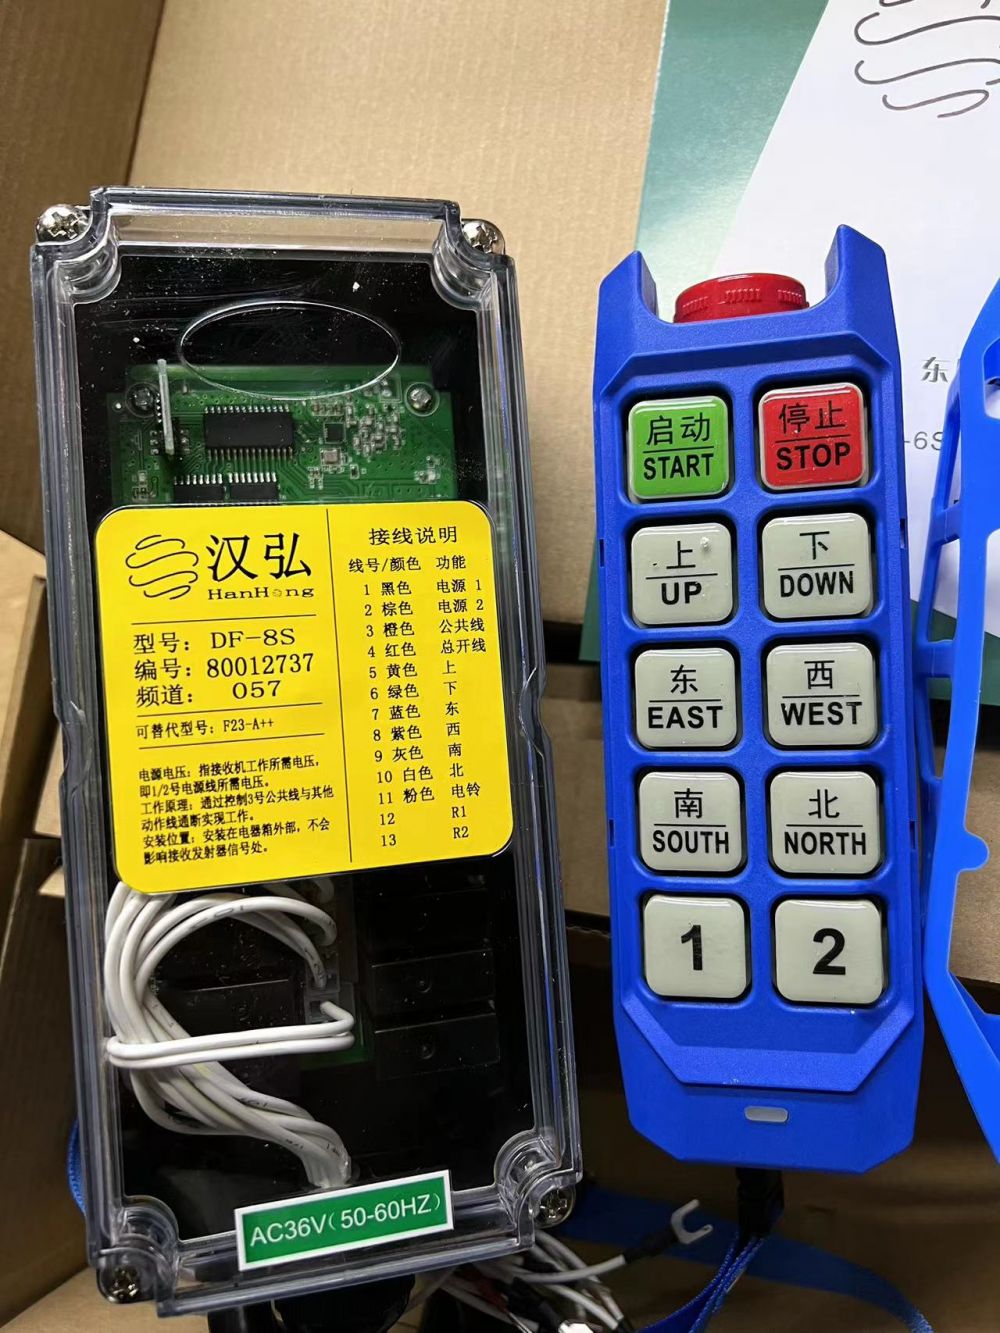 广东广州工业遥控器厂家、型号、起重机遥控器批发零售、安装改造维修